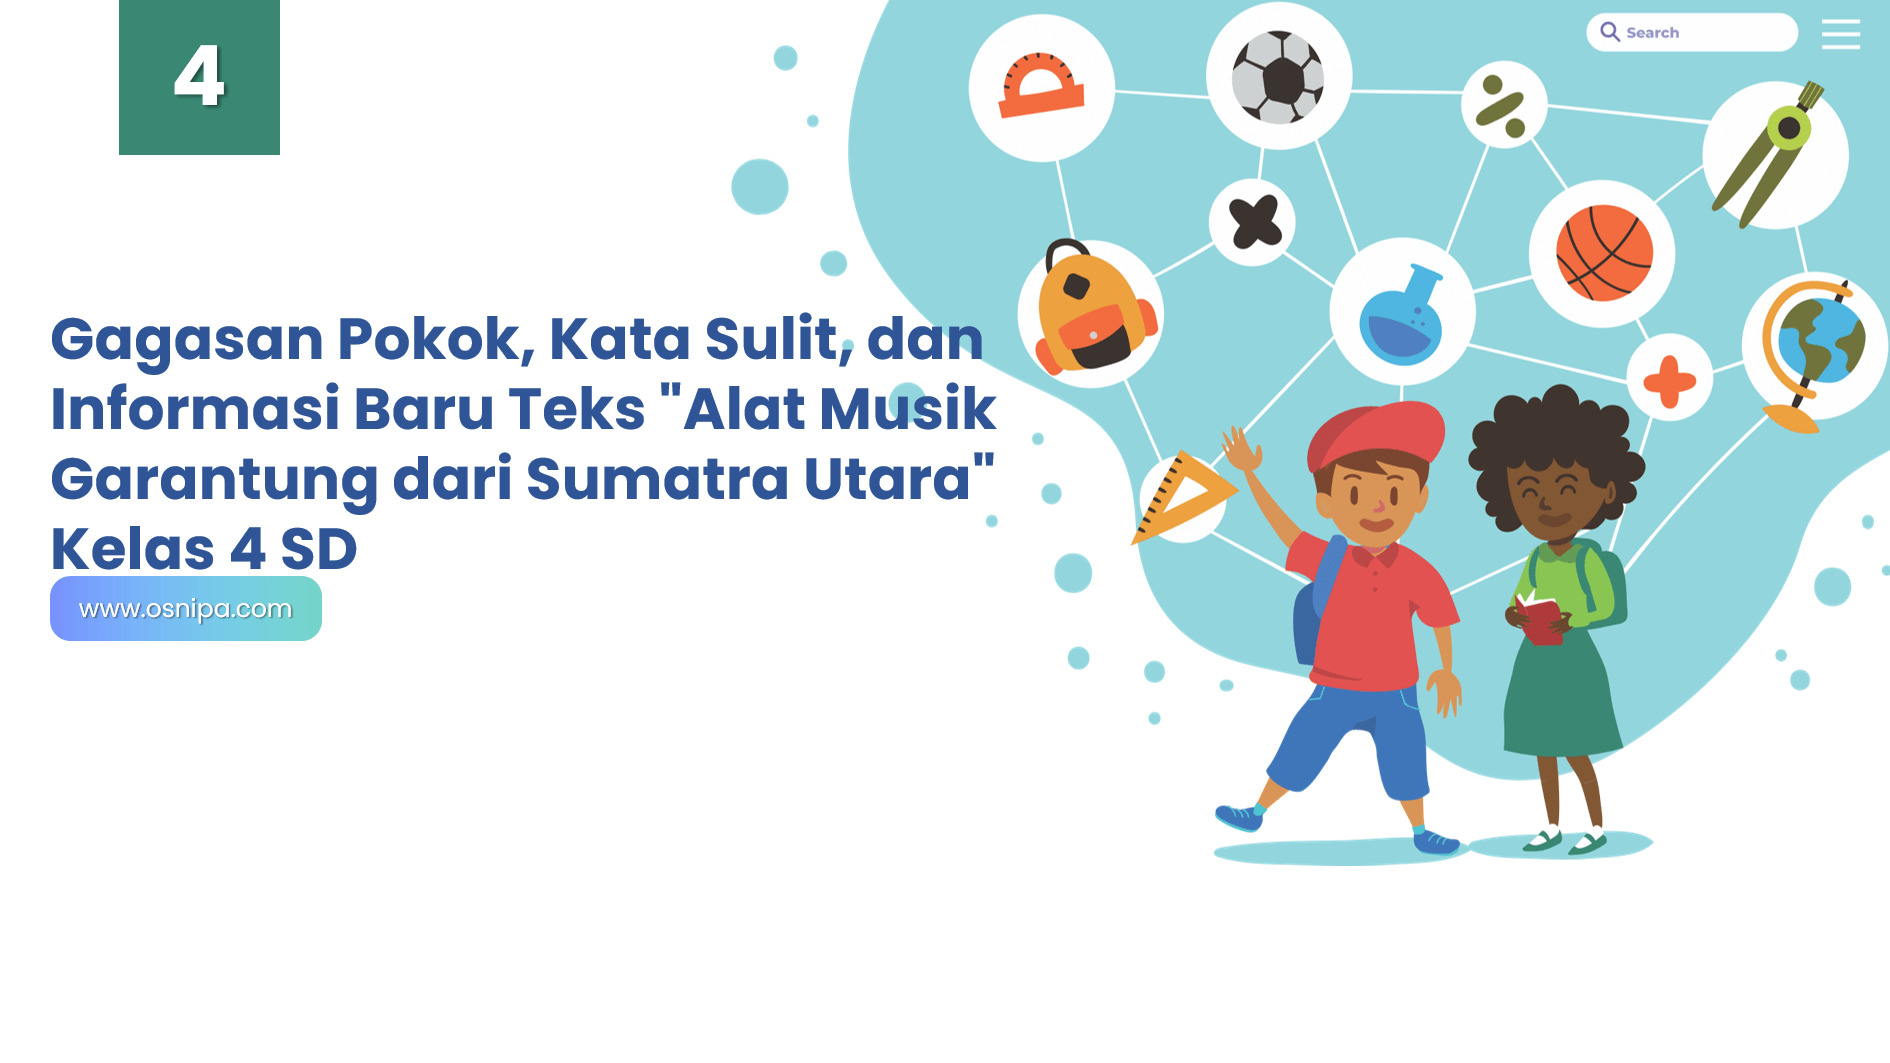 Gagasan Pokok, Kata Sulit, dan Informasi Baru Teks "Alat Musik Garantung dari Sumatra Utara" Kelas 4 SD